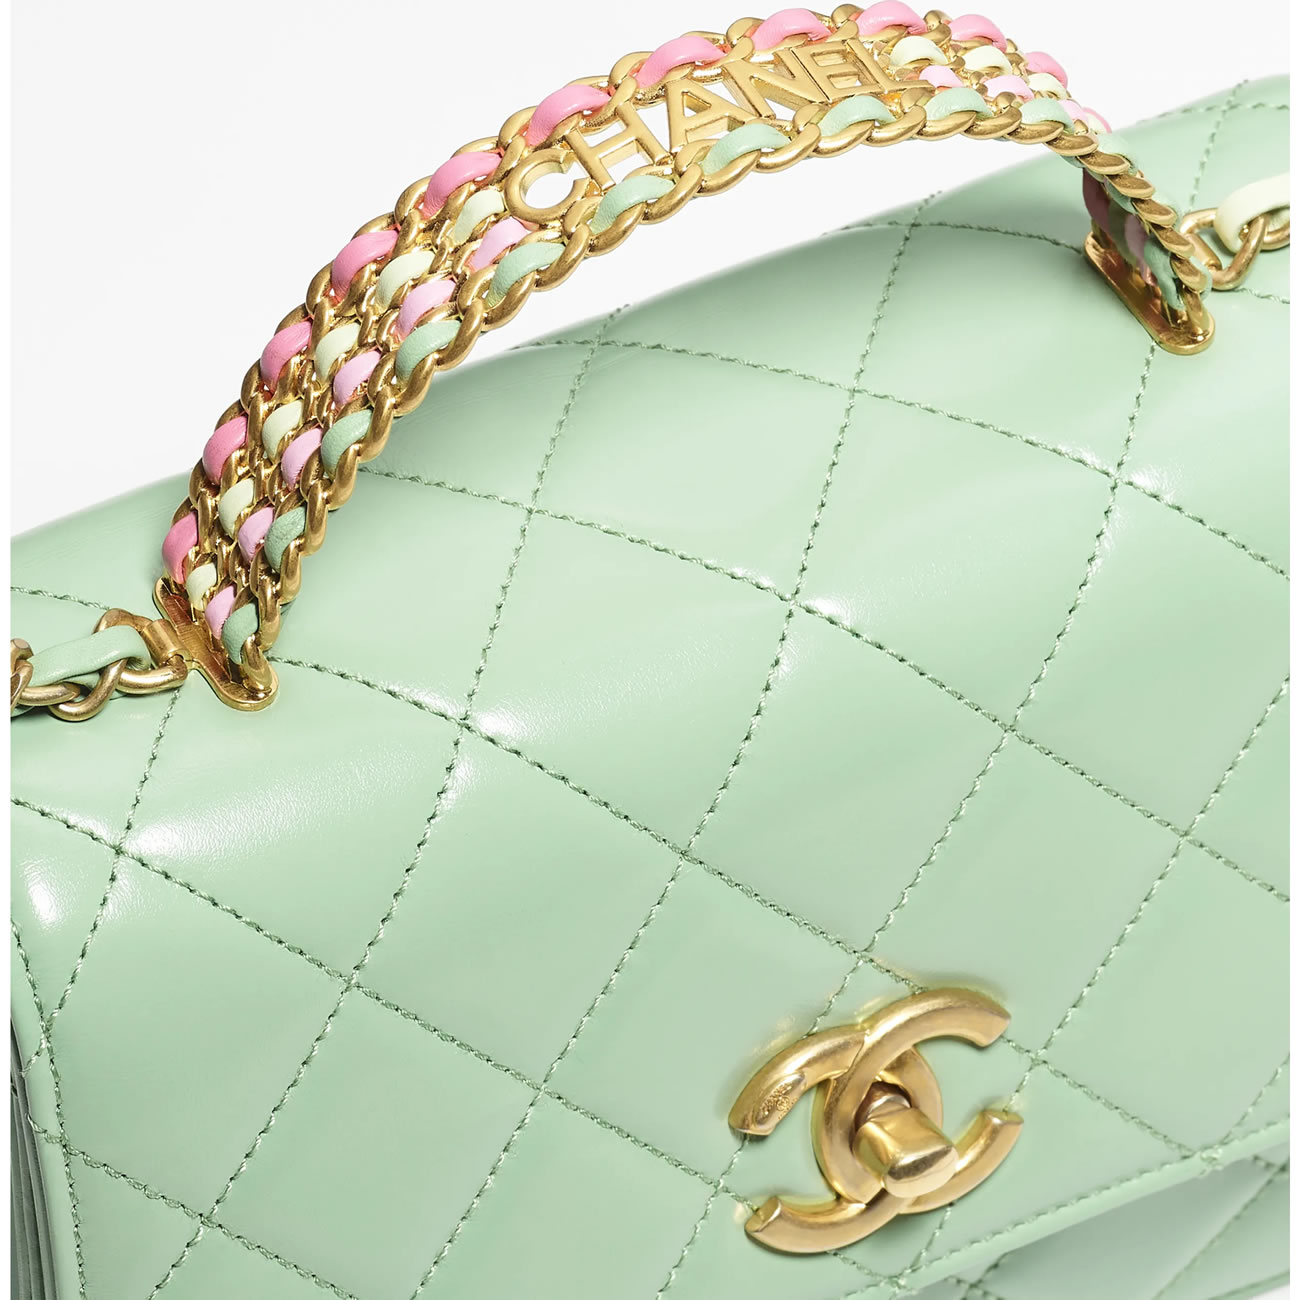 Chanel Flap Bag 29 - kickbulk.co